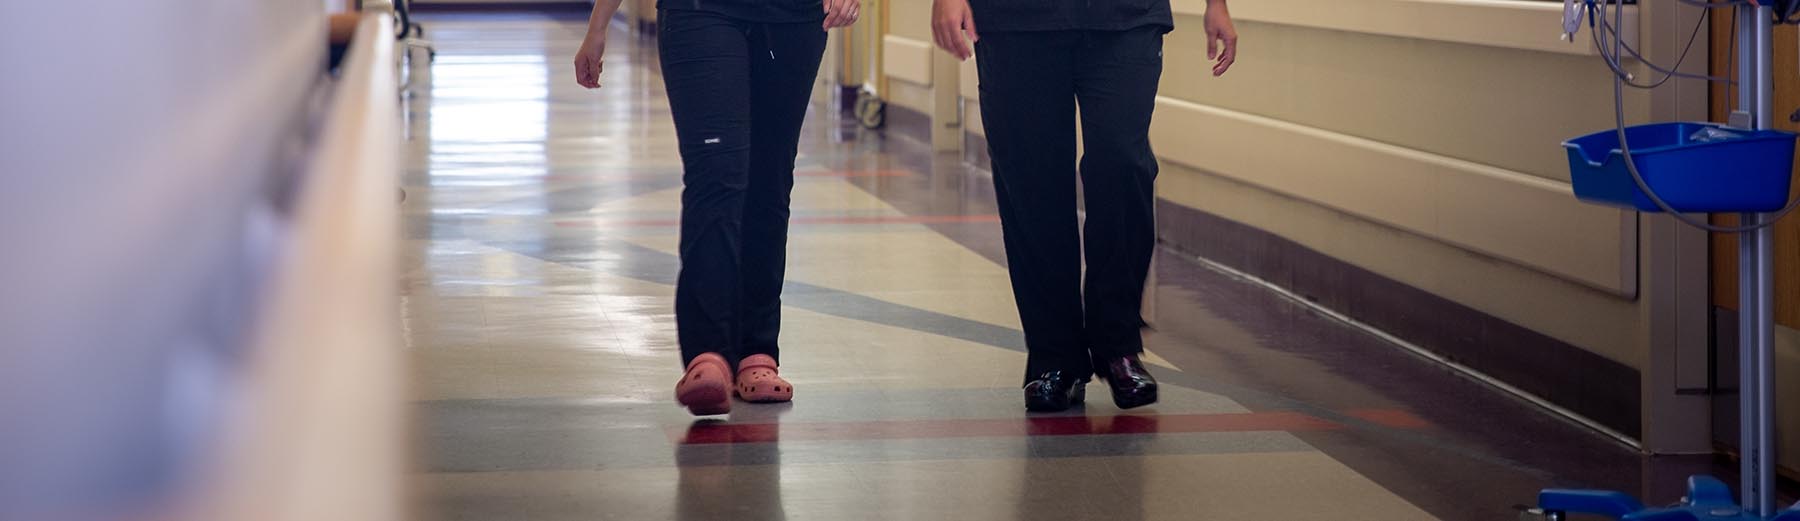 Duas enfermeiras andando por um corredor